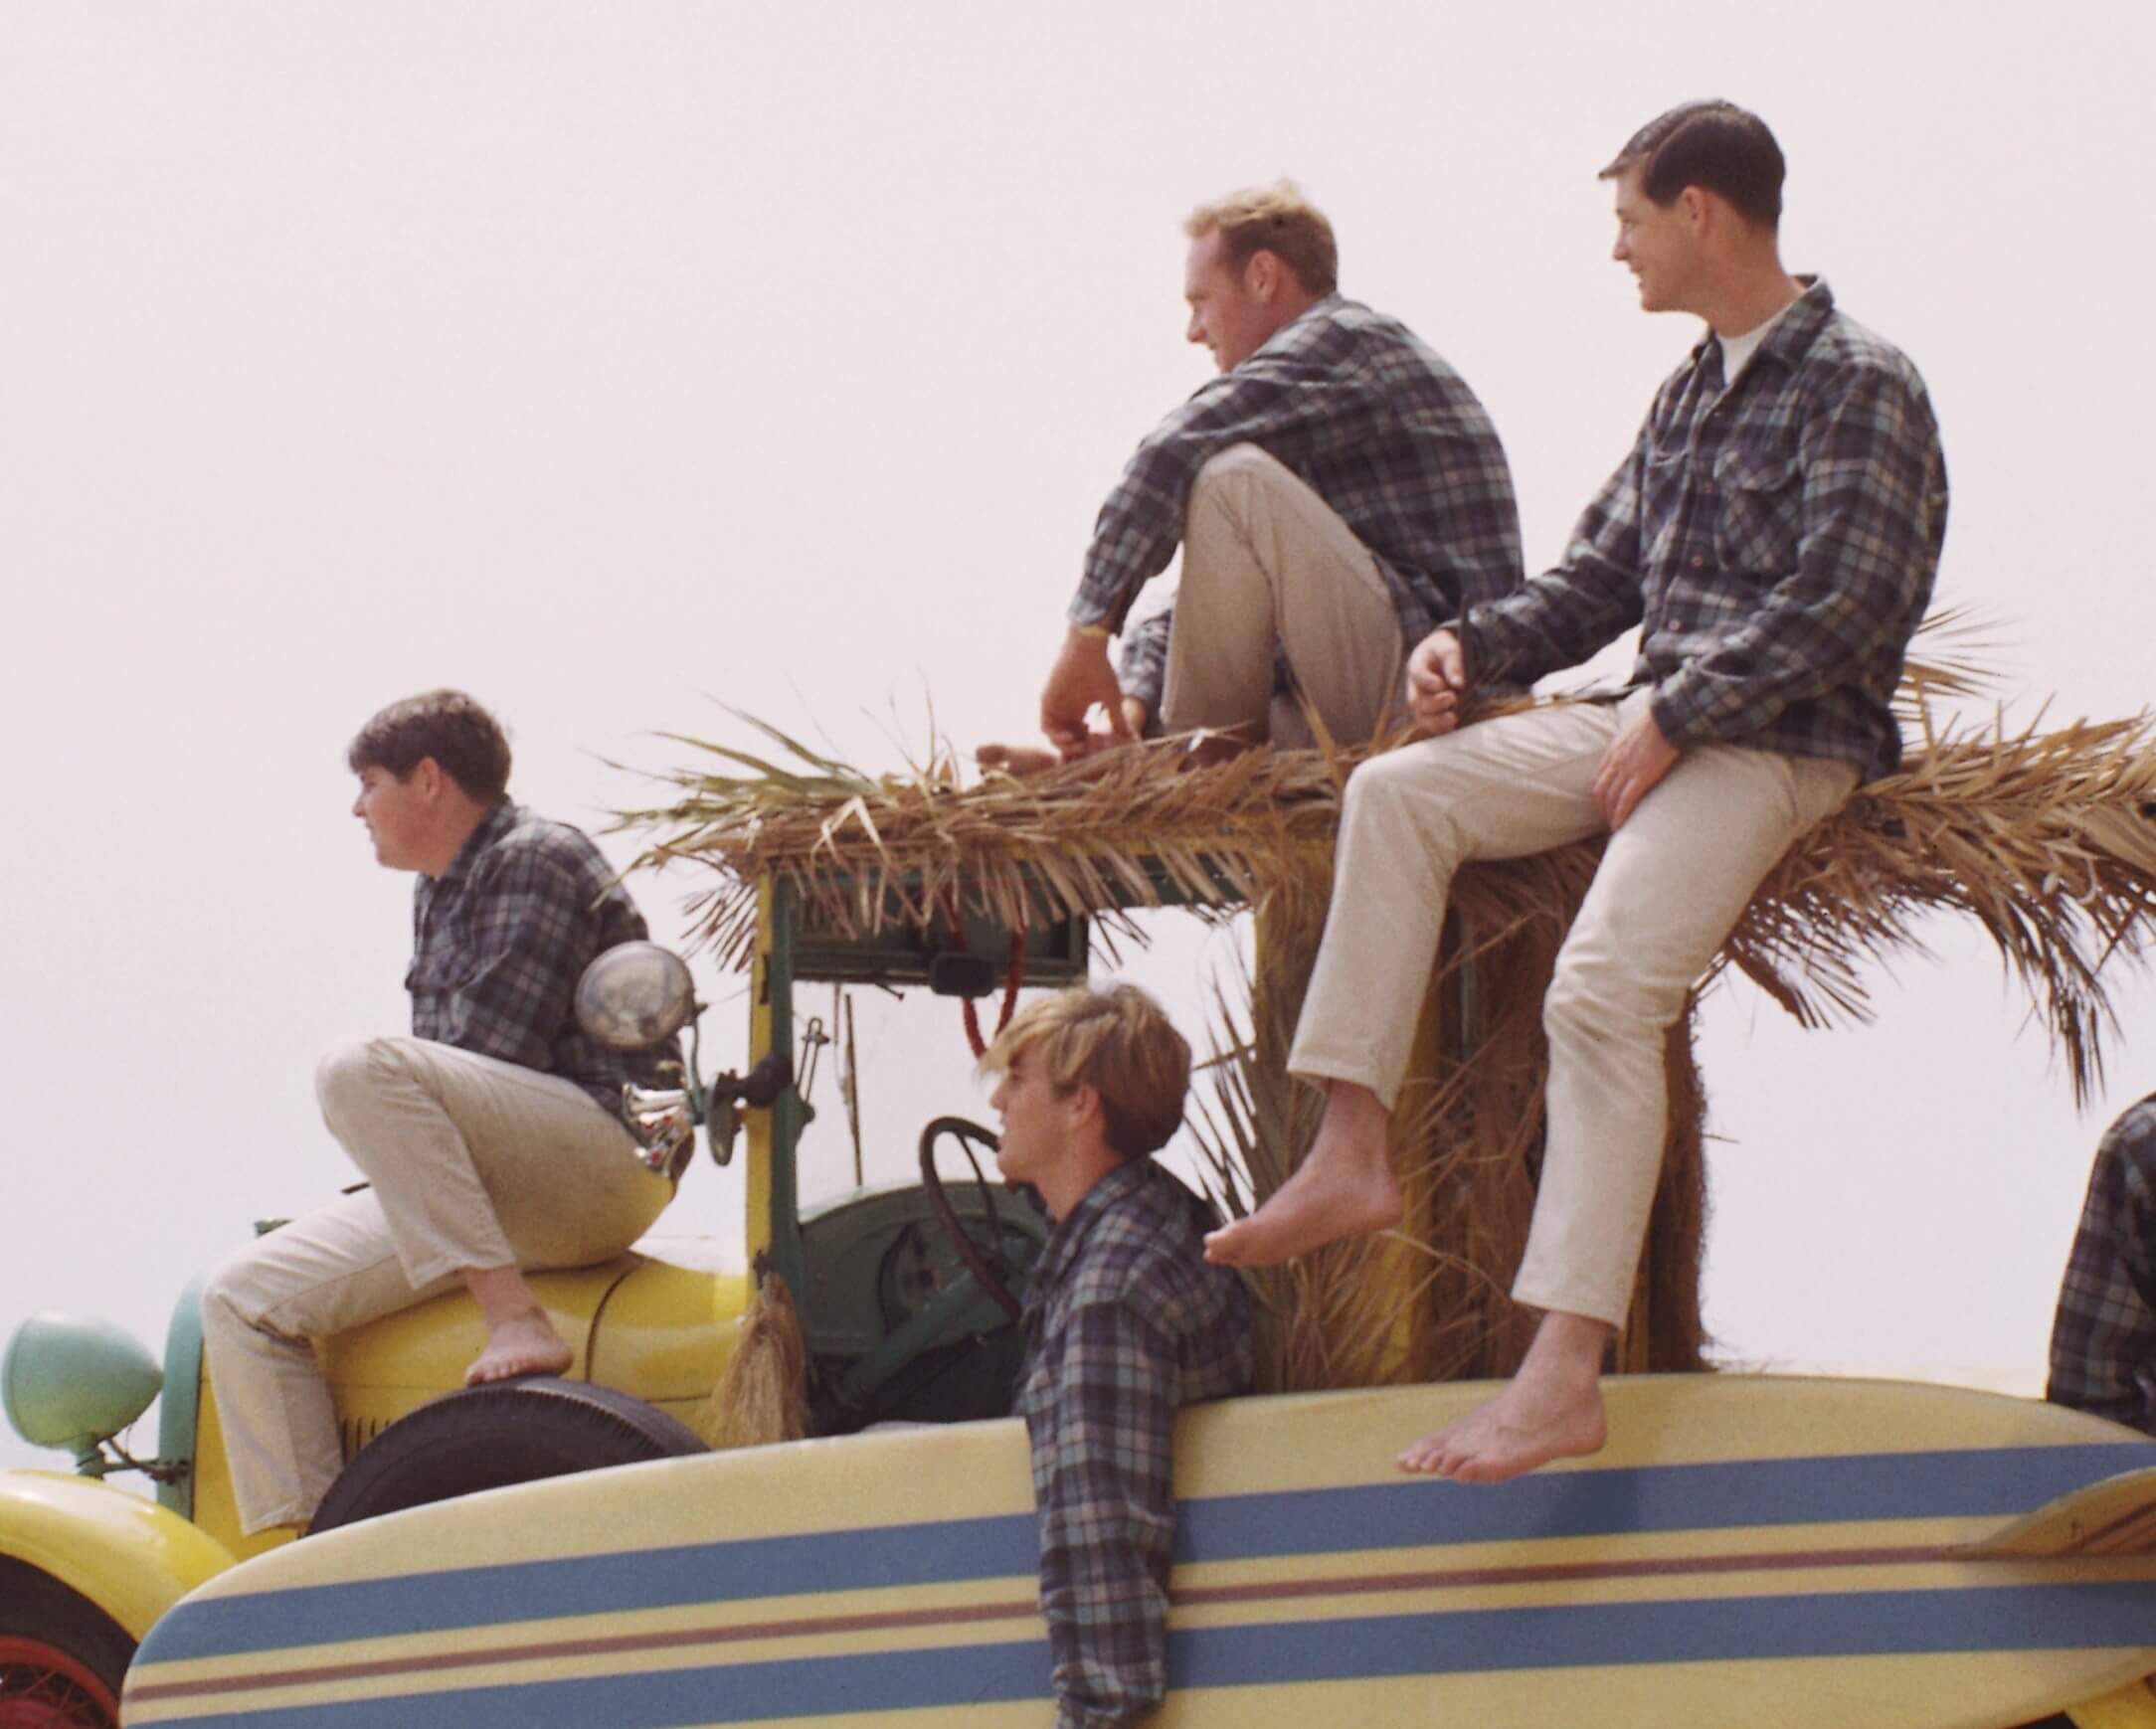 The Beach Boys sitting on a car